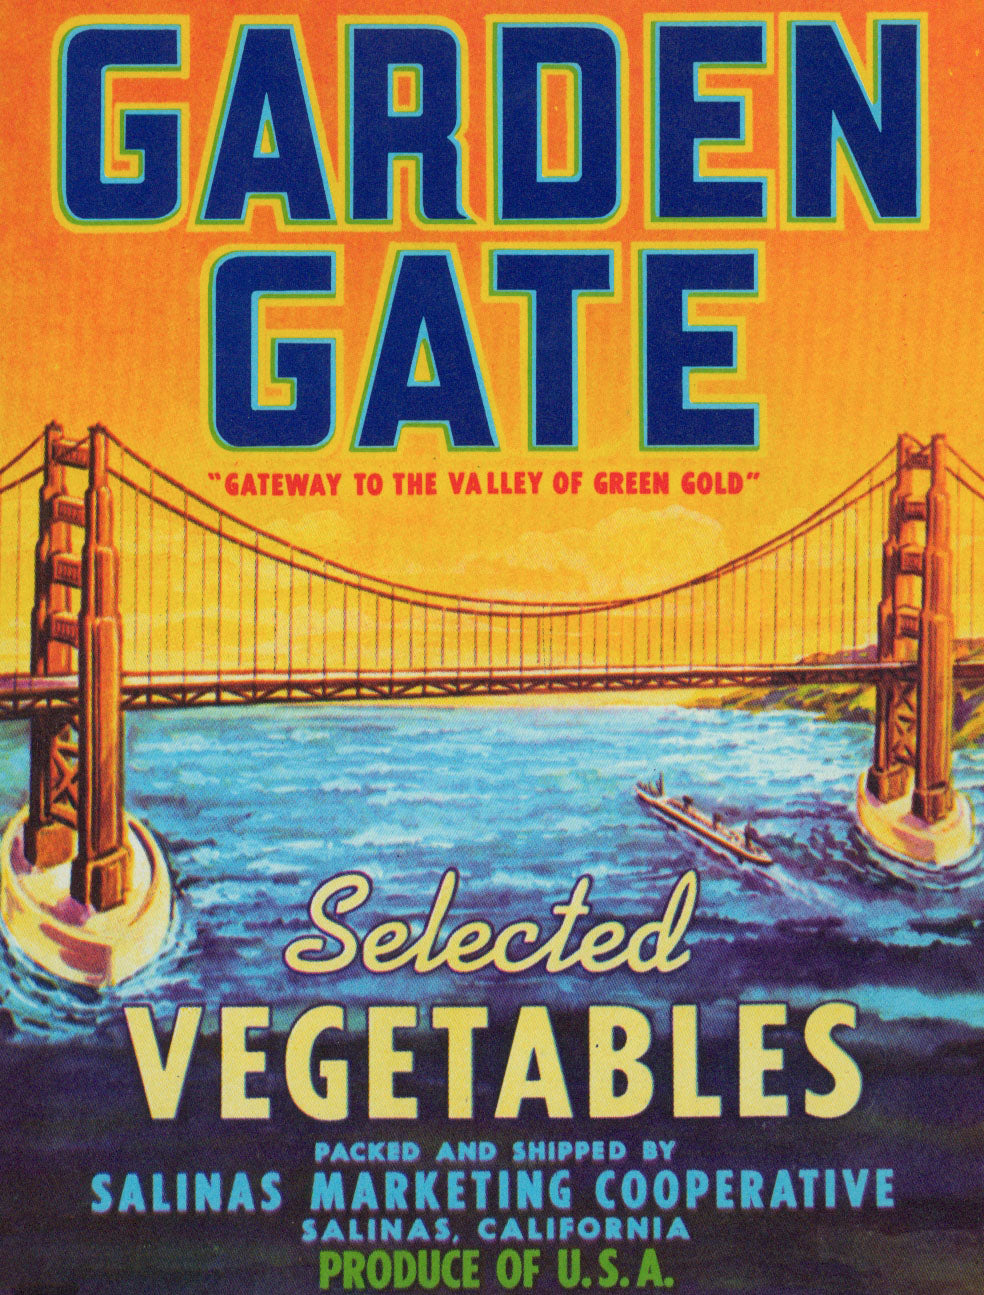 Garden Gate- Crate Label - Authentic Vintage Antique Print